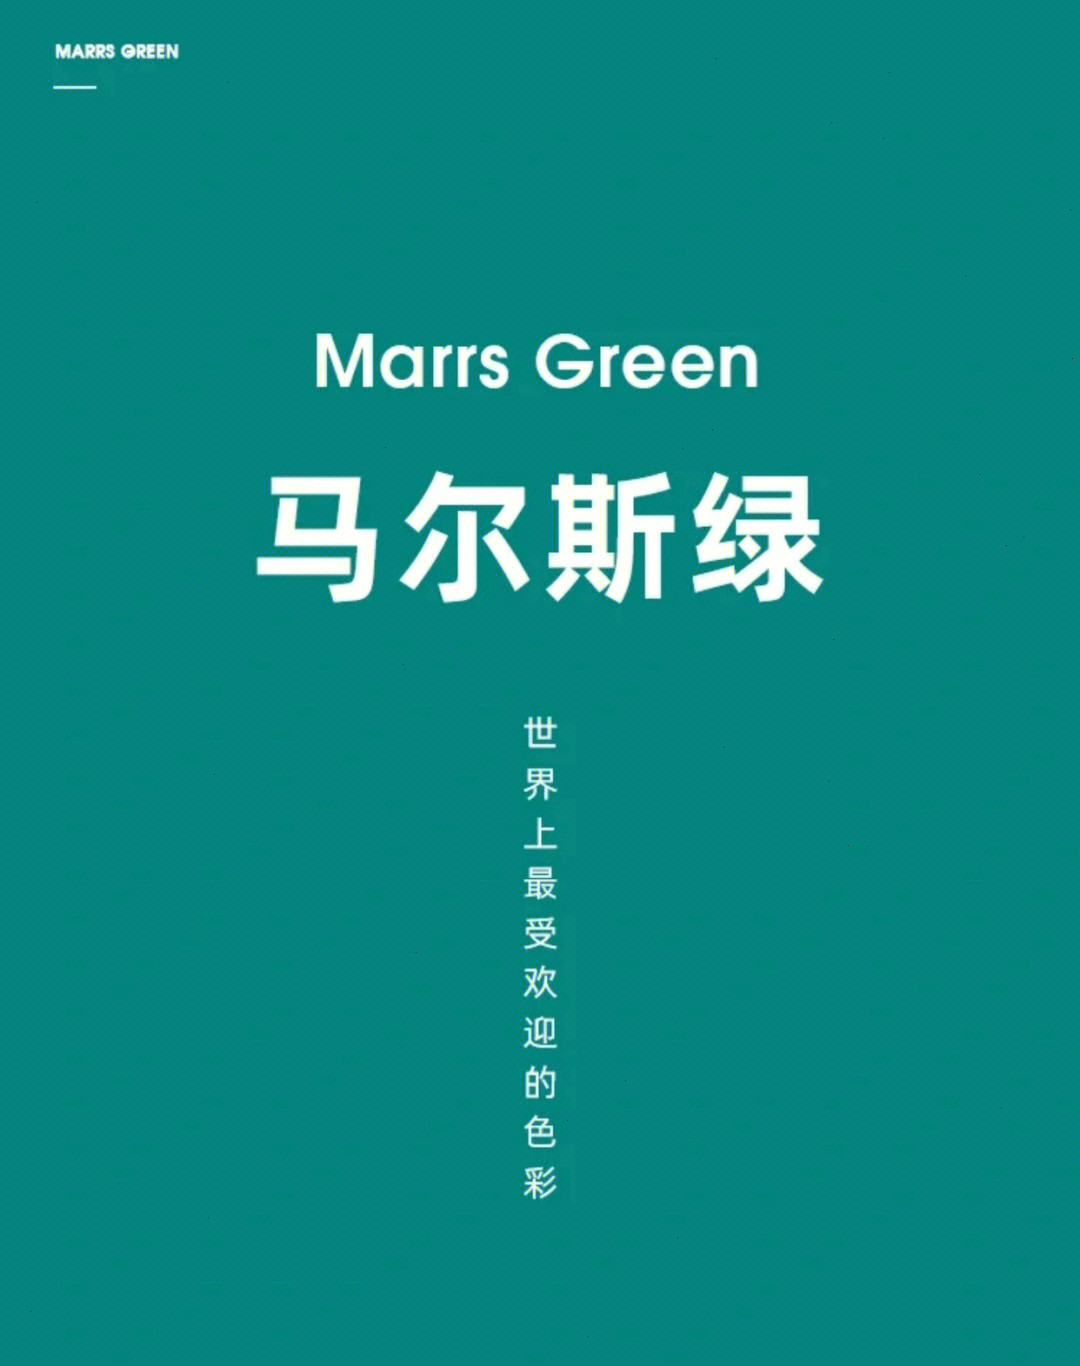 马尔斯绿颜色图片